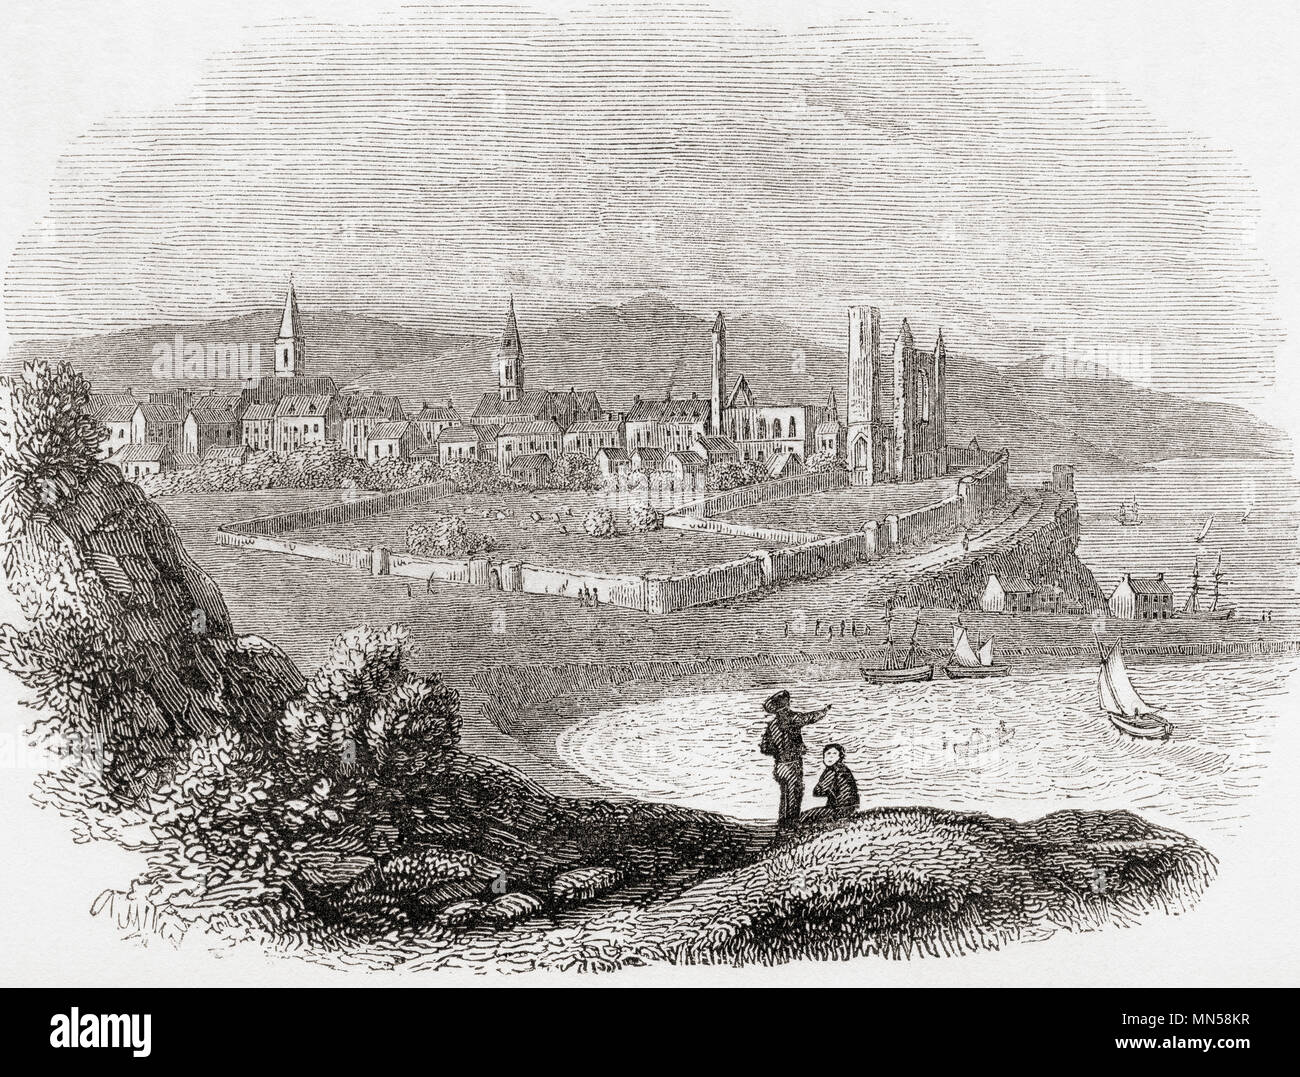 Una vista de Saint Andrews, Fife, Escocia c. 1740. Desde Inglaterra vieja: un museo pictórico, publicado 1847. Foto de stock